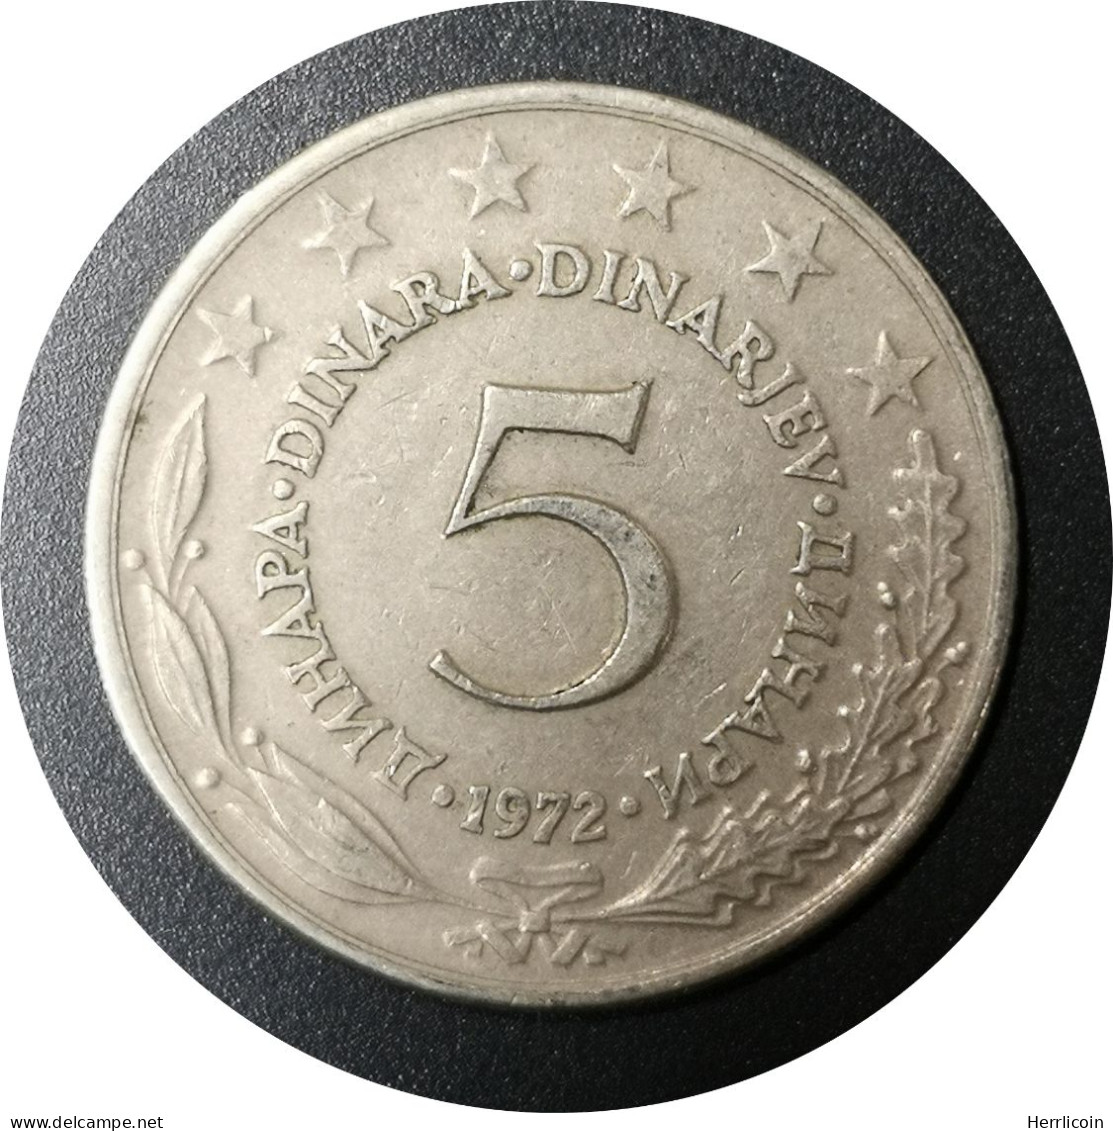 Monnaie Yougoslavie - 1972 - 5 Dinars - Yougoslavie